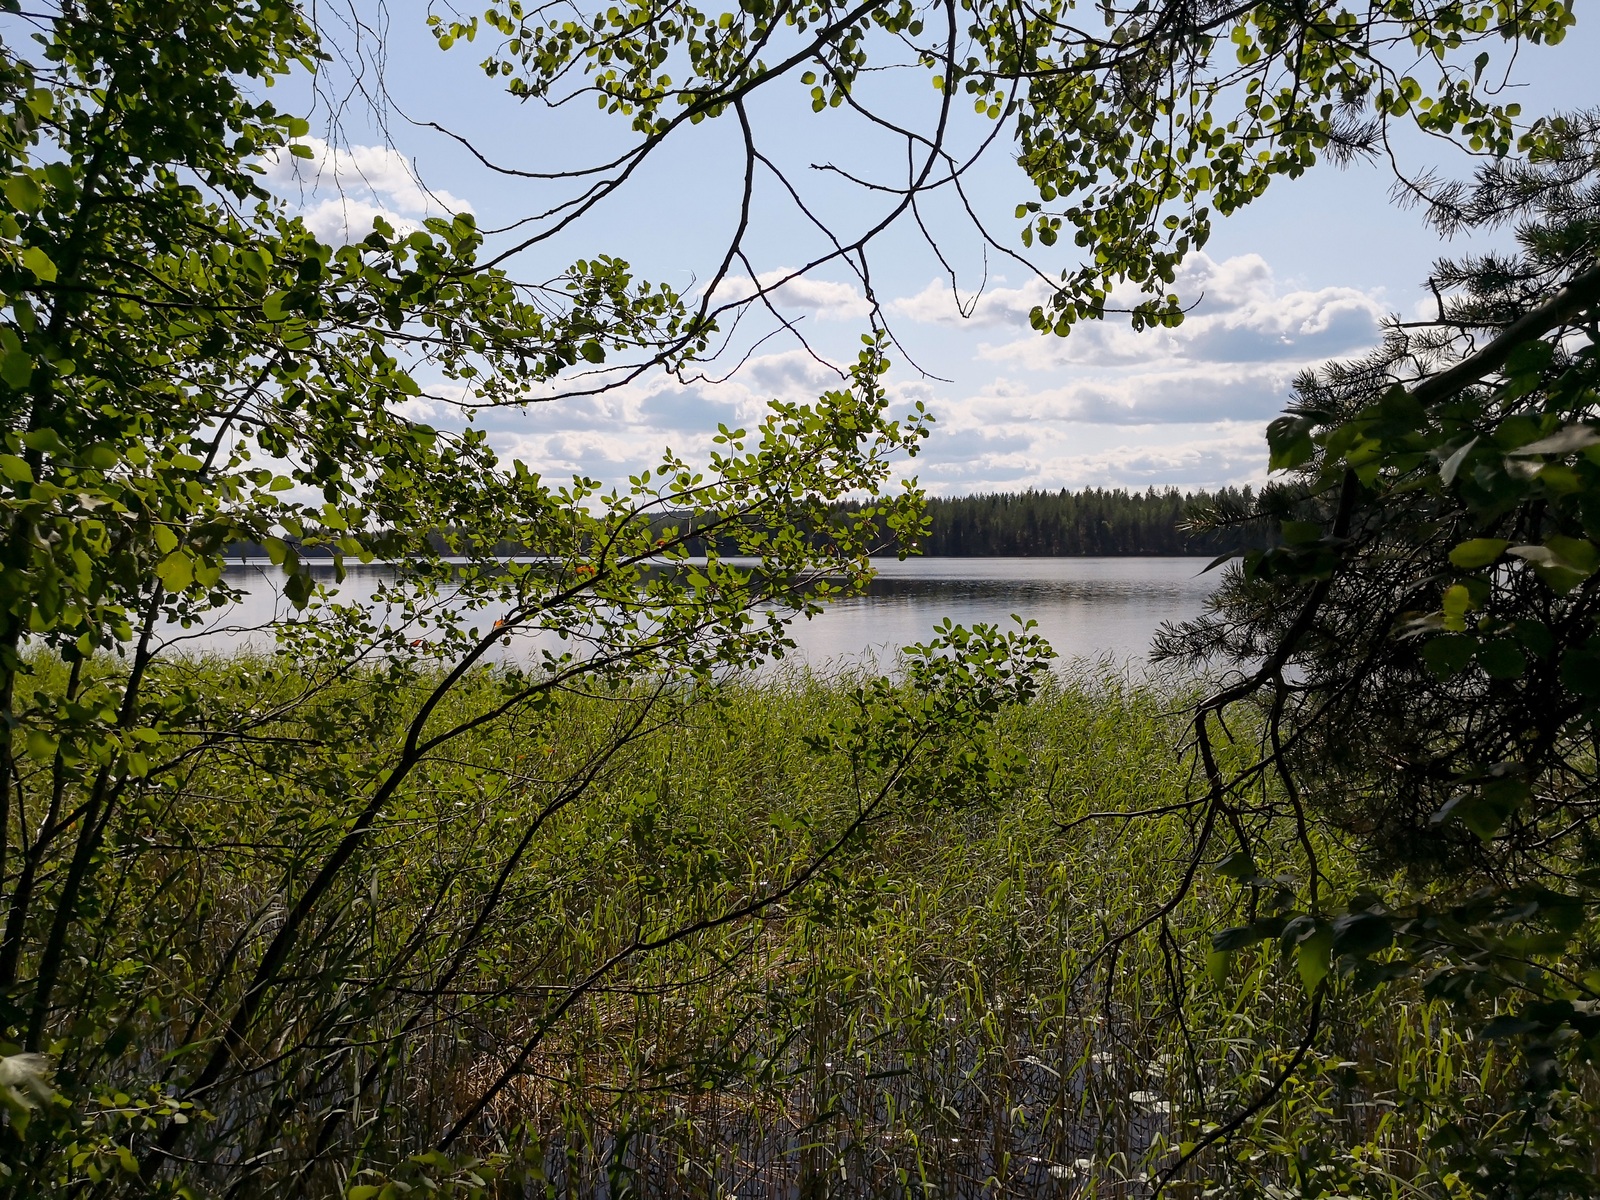 Lehtipuiden ja männyn oksat reunustavat kesäistä järvimaisemaa. Rantavedessä kasvaa ruovikkoa.